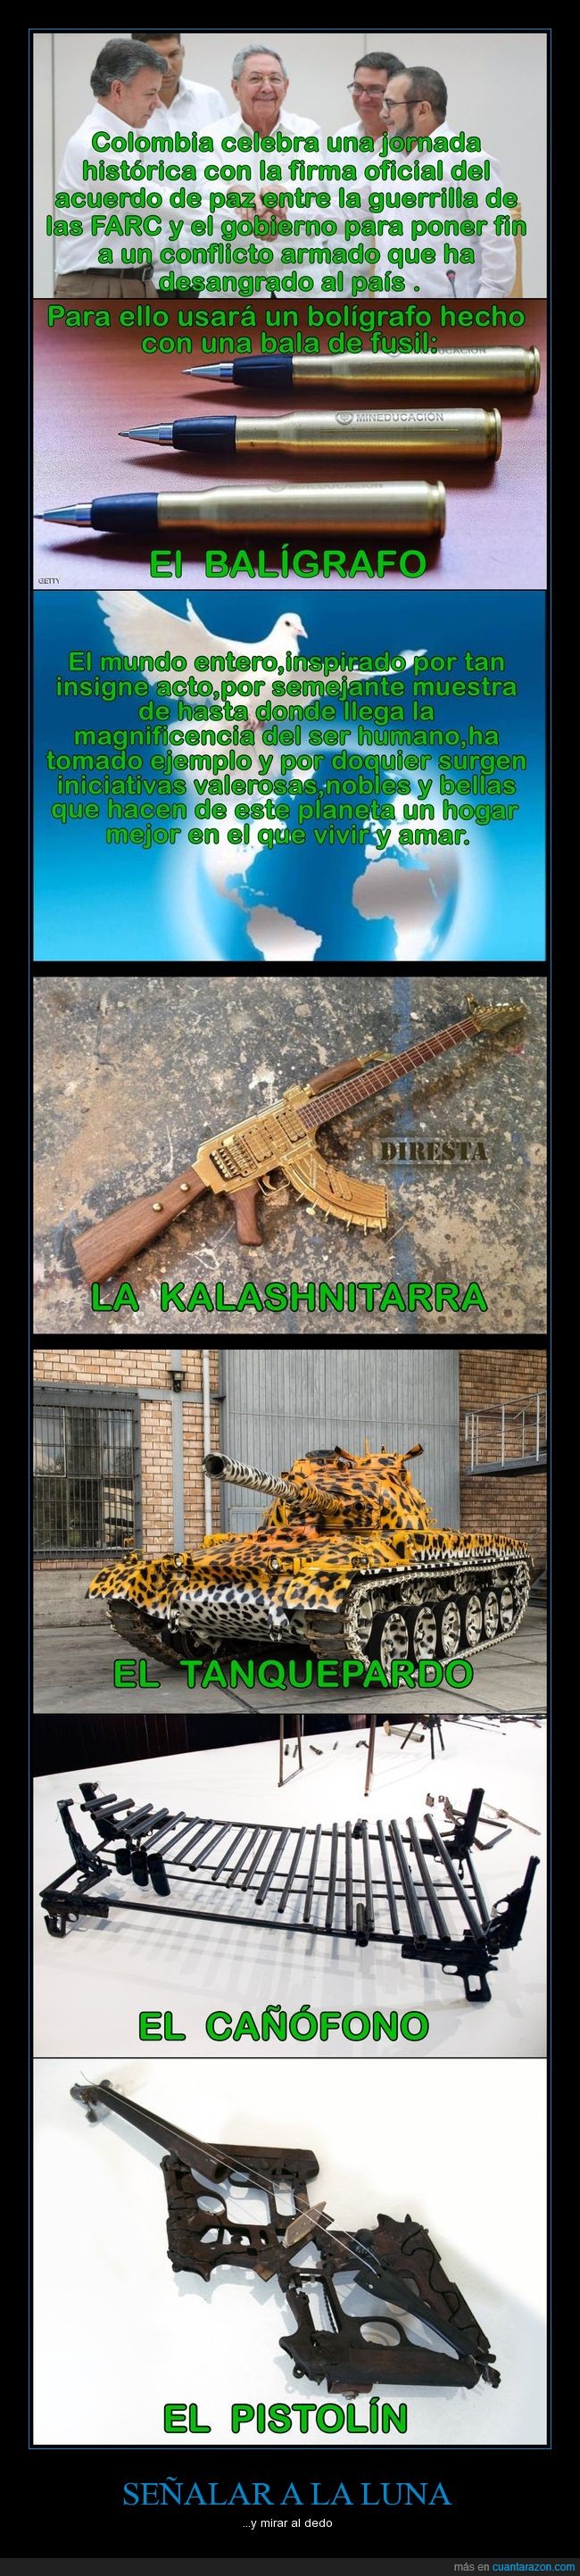 Armas,Colombia,paz